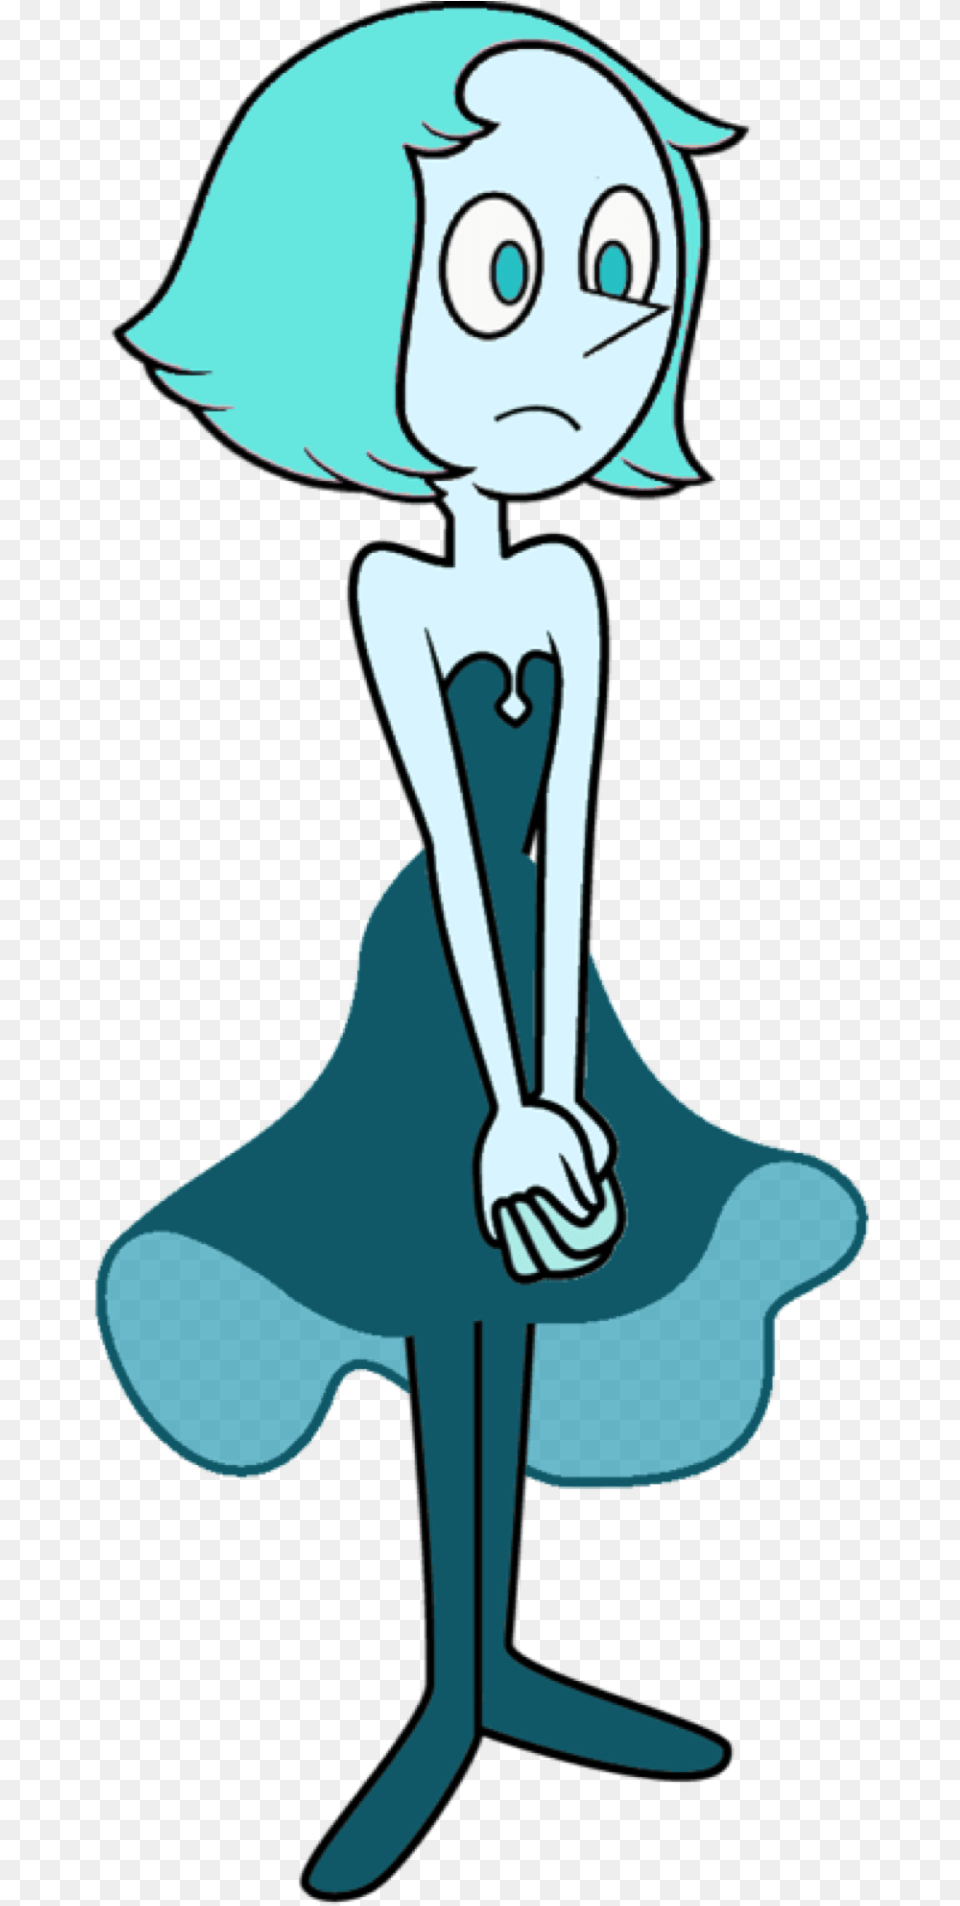 Aqua Pearl Aqua Pearl Steven Universe, Person, Cartoon, Face, Head Png Image